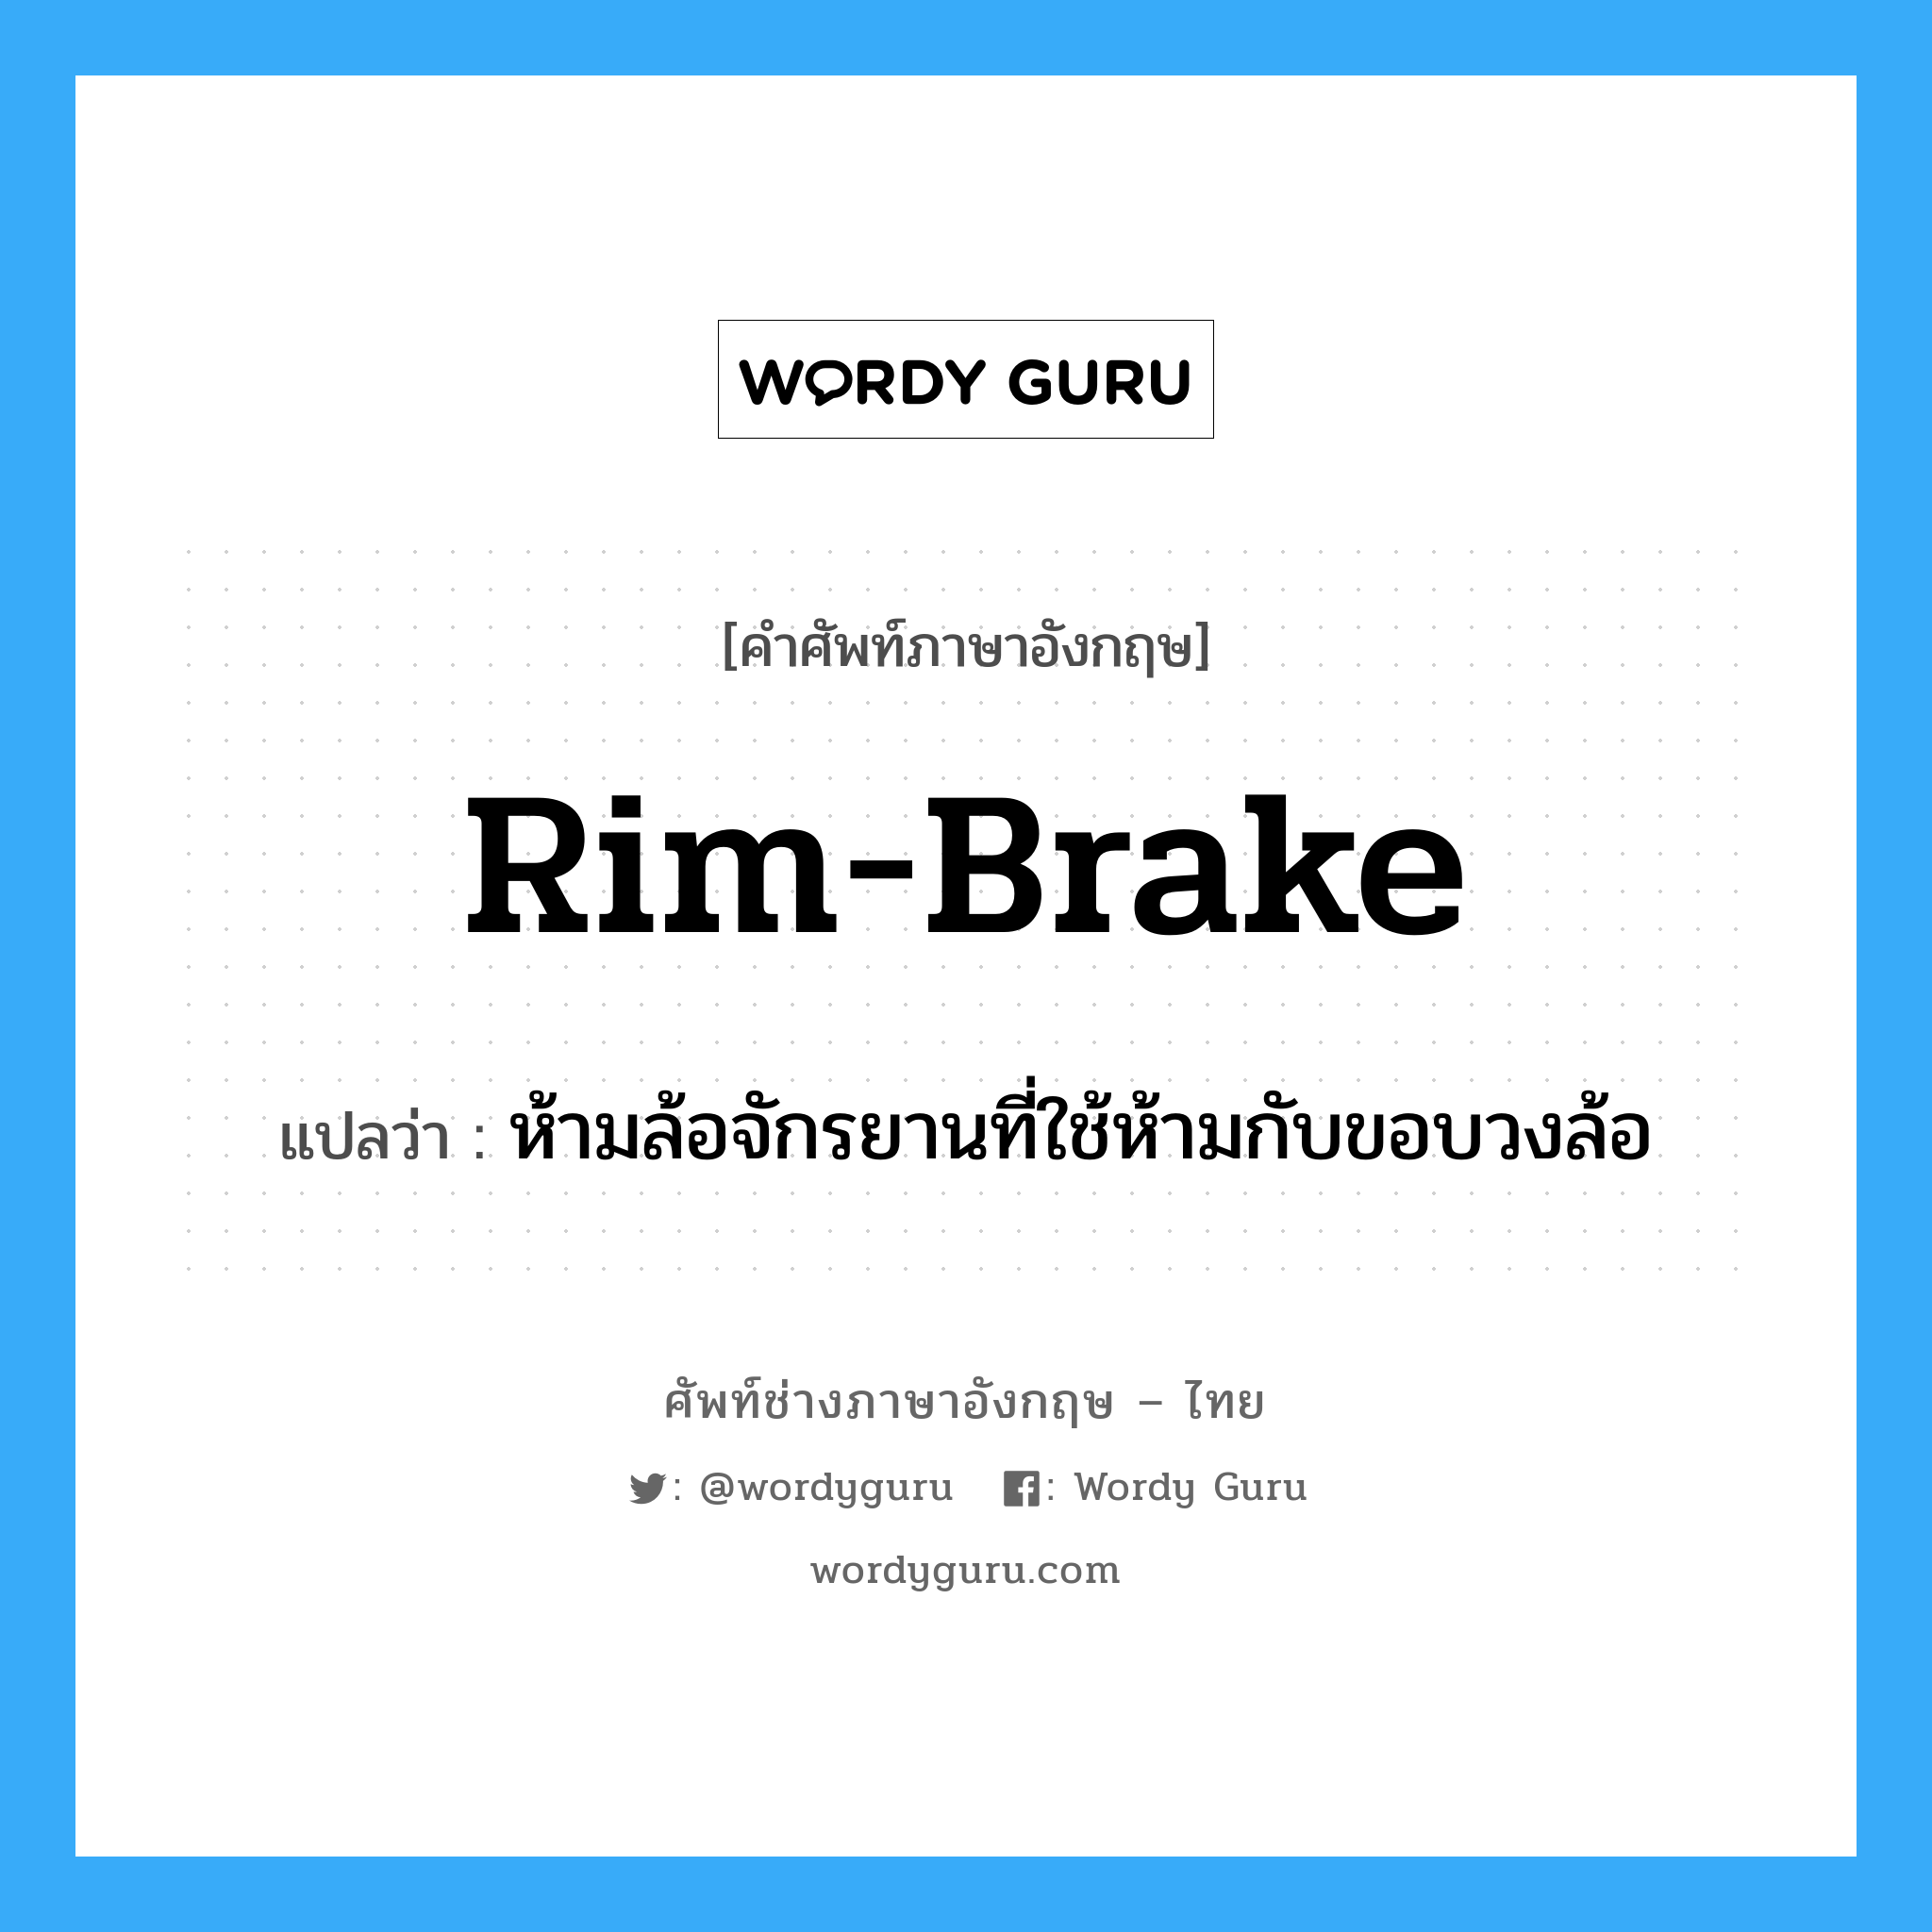 rim brake แปลว่า?, คำศัพท์ช่างภาษาอังกฤษ - ไทย rim-brake คำศัพท์ภาษาอังกฤษ rim-brake แปลว่า ห้ามล้อจักรยานที่ใช้ห้ามกับขอบวงล้อ